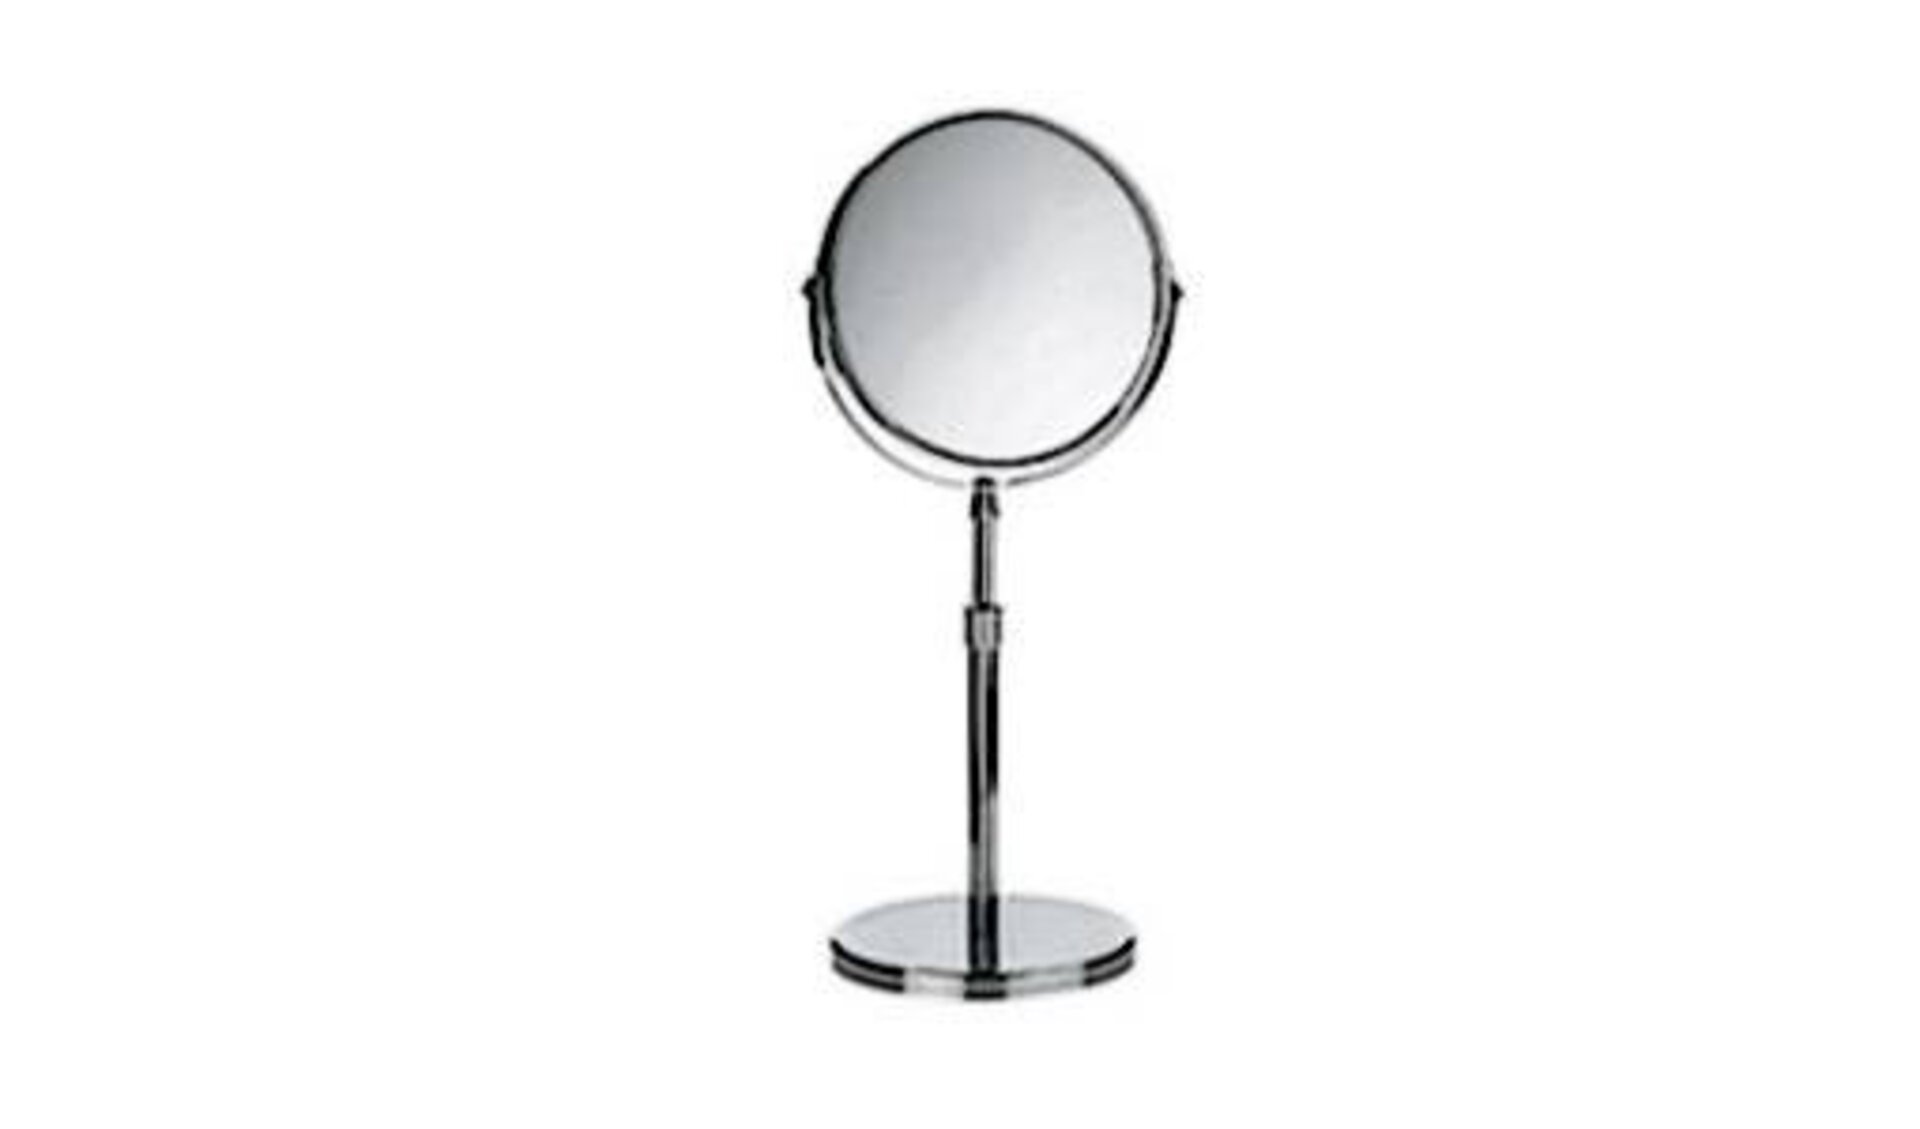 Runder Kosmetikspiegel mit höhenverstellbaren Fuß als Sinnbild für Spiegel